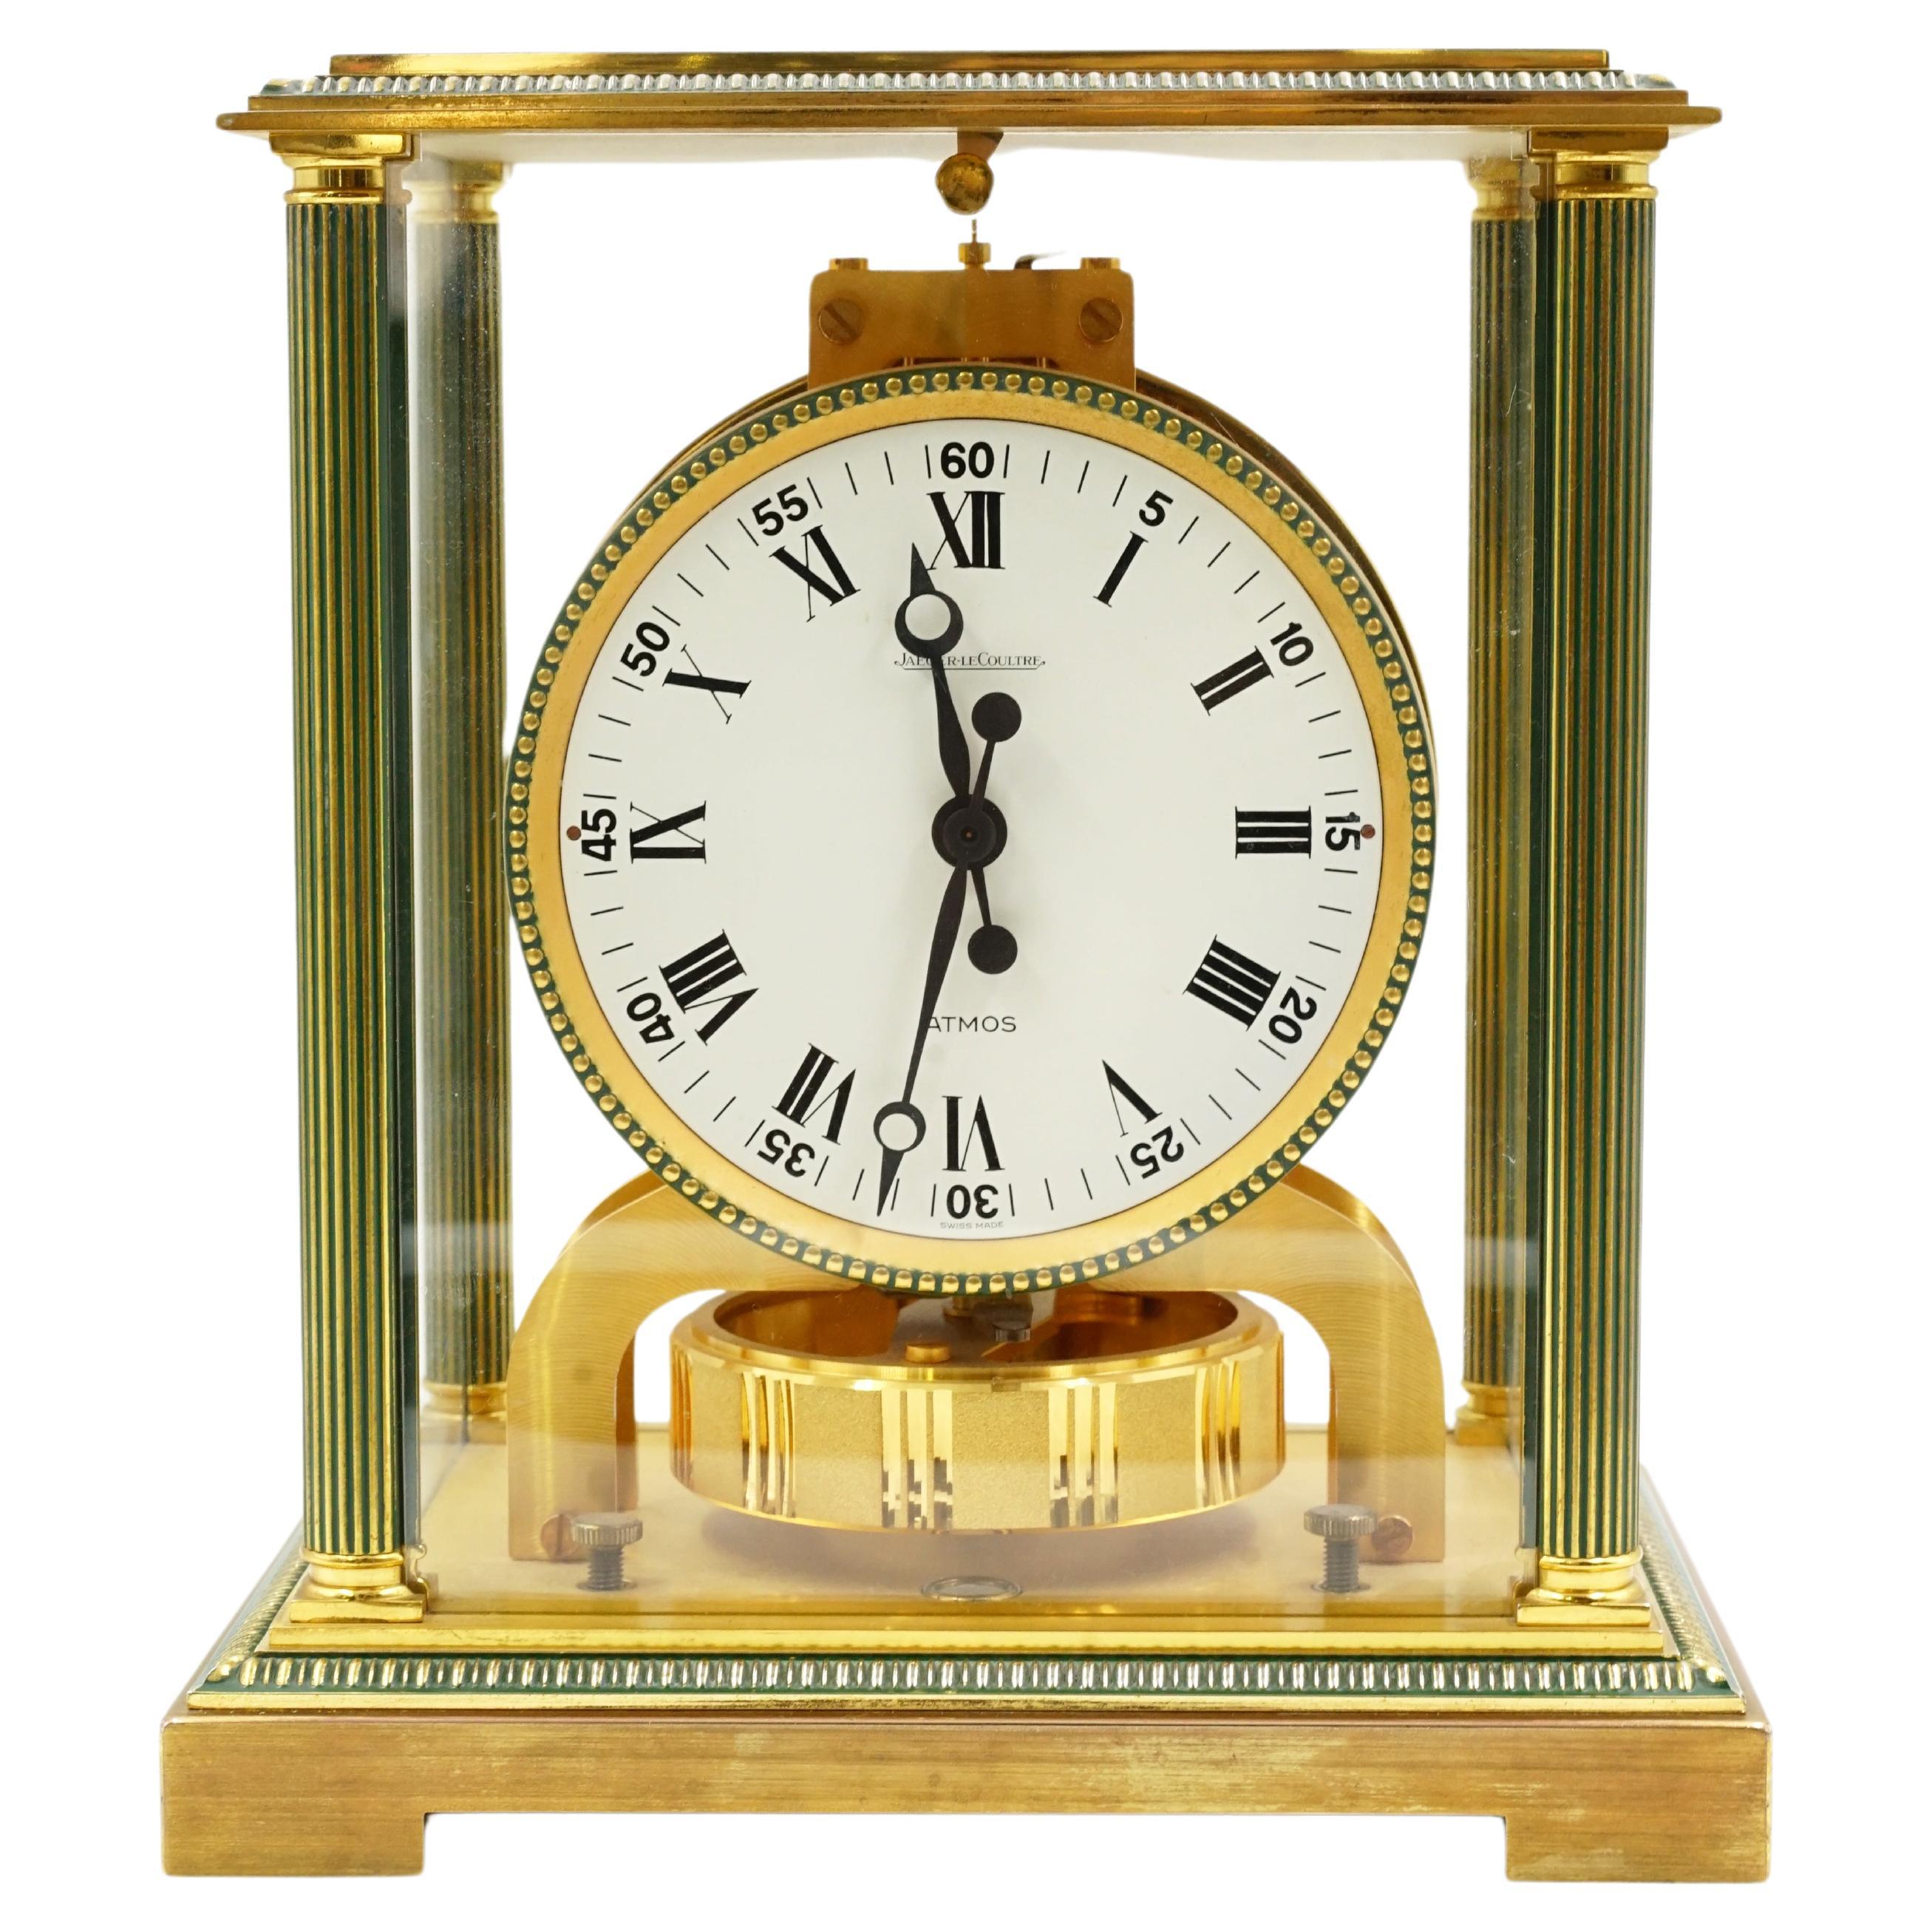 Horloge de table Atmos Le coultre de Jaeguer
Style de l'annuaire des modèles Atmos
Origine Suisse Circa 1970
NO AGE Nature. Usure minime due à l'âge.
Fonctionne correctement
Matériaux Bronze doré et ses colonnes sont peintes avec de l'émail